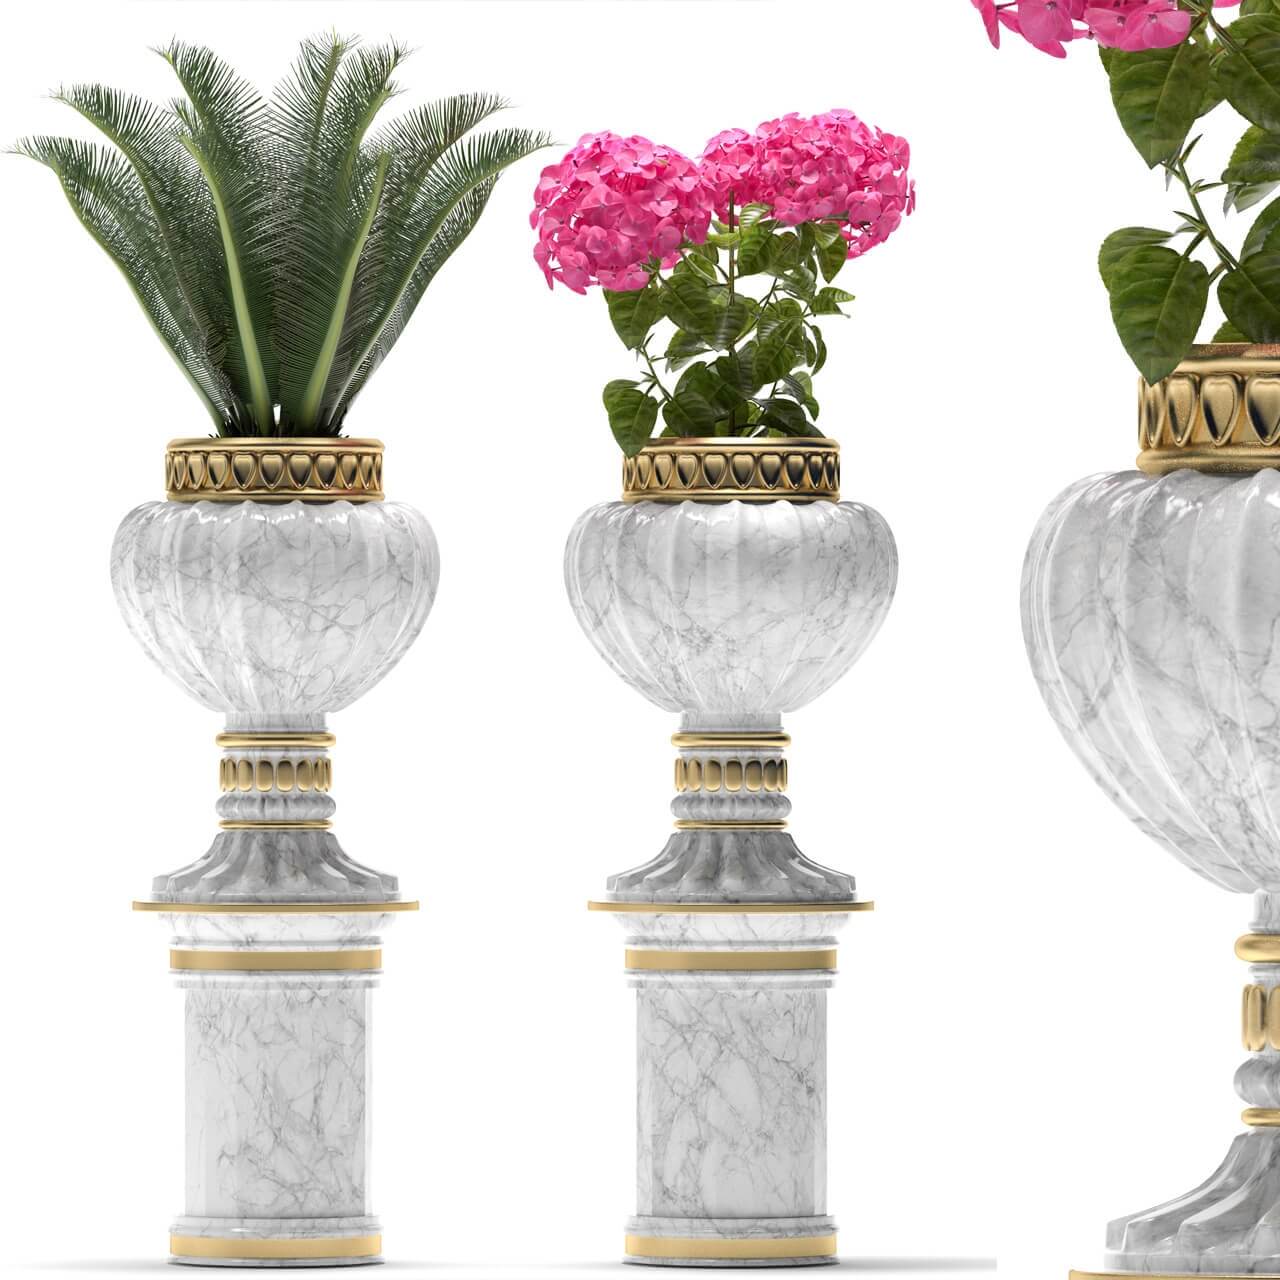 高脚装饰花盆中的红色绣球花和苏铁绿植盆景3D模型（OBJ,FBX,MAX）